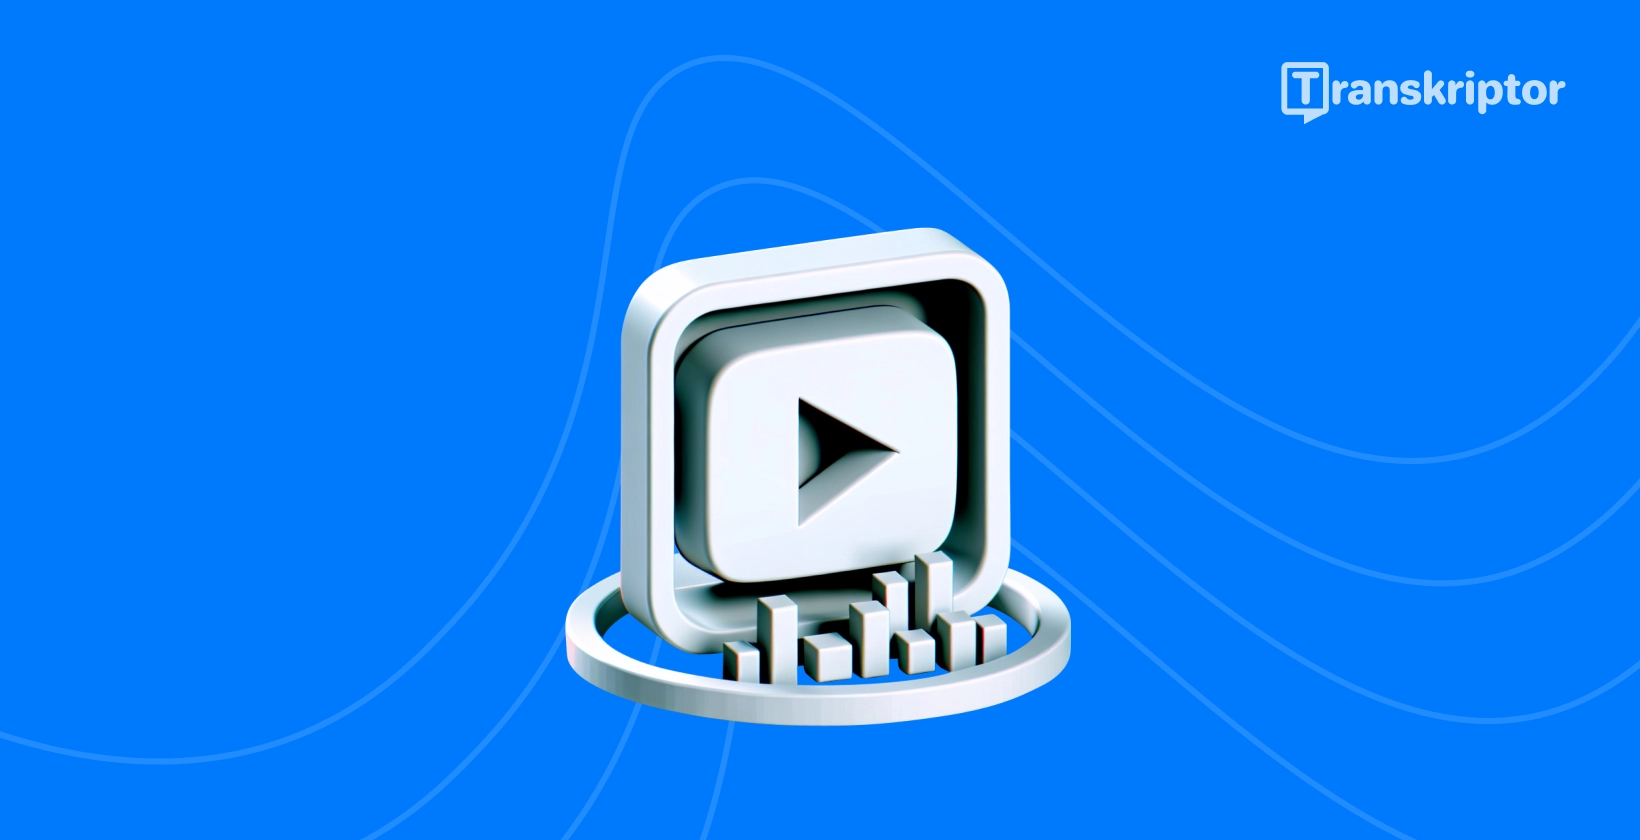 Κουμπί αναπαραγωγής και οπτική μεταγραφή που απεικονίζει μεθόδους για την αποτελεσματική μεταγραφή YouTube βίντεο.